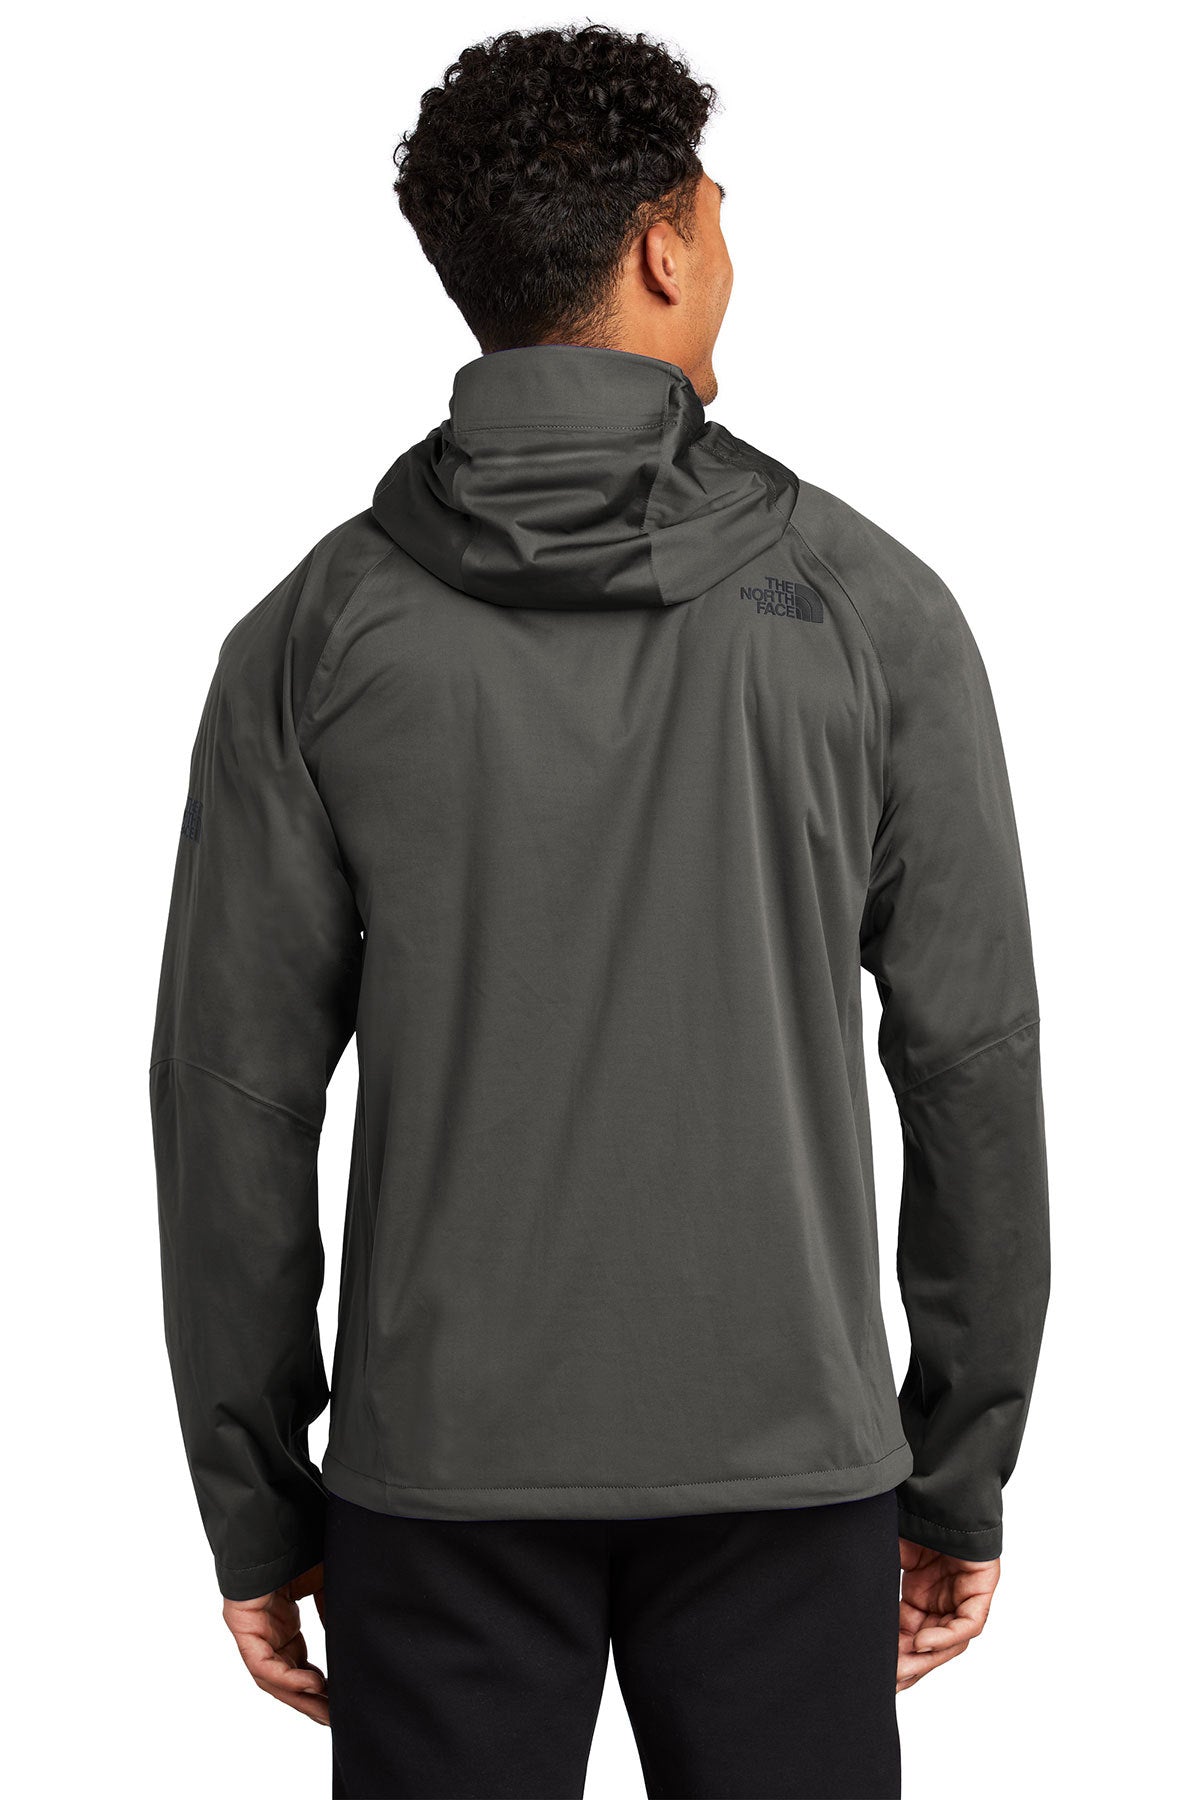 Branded North Face DryVent Stretch Jacket Asphalt Grey